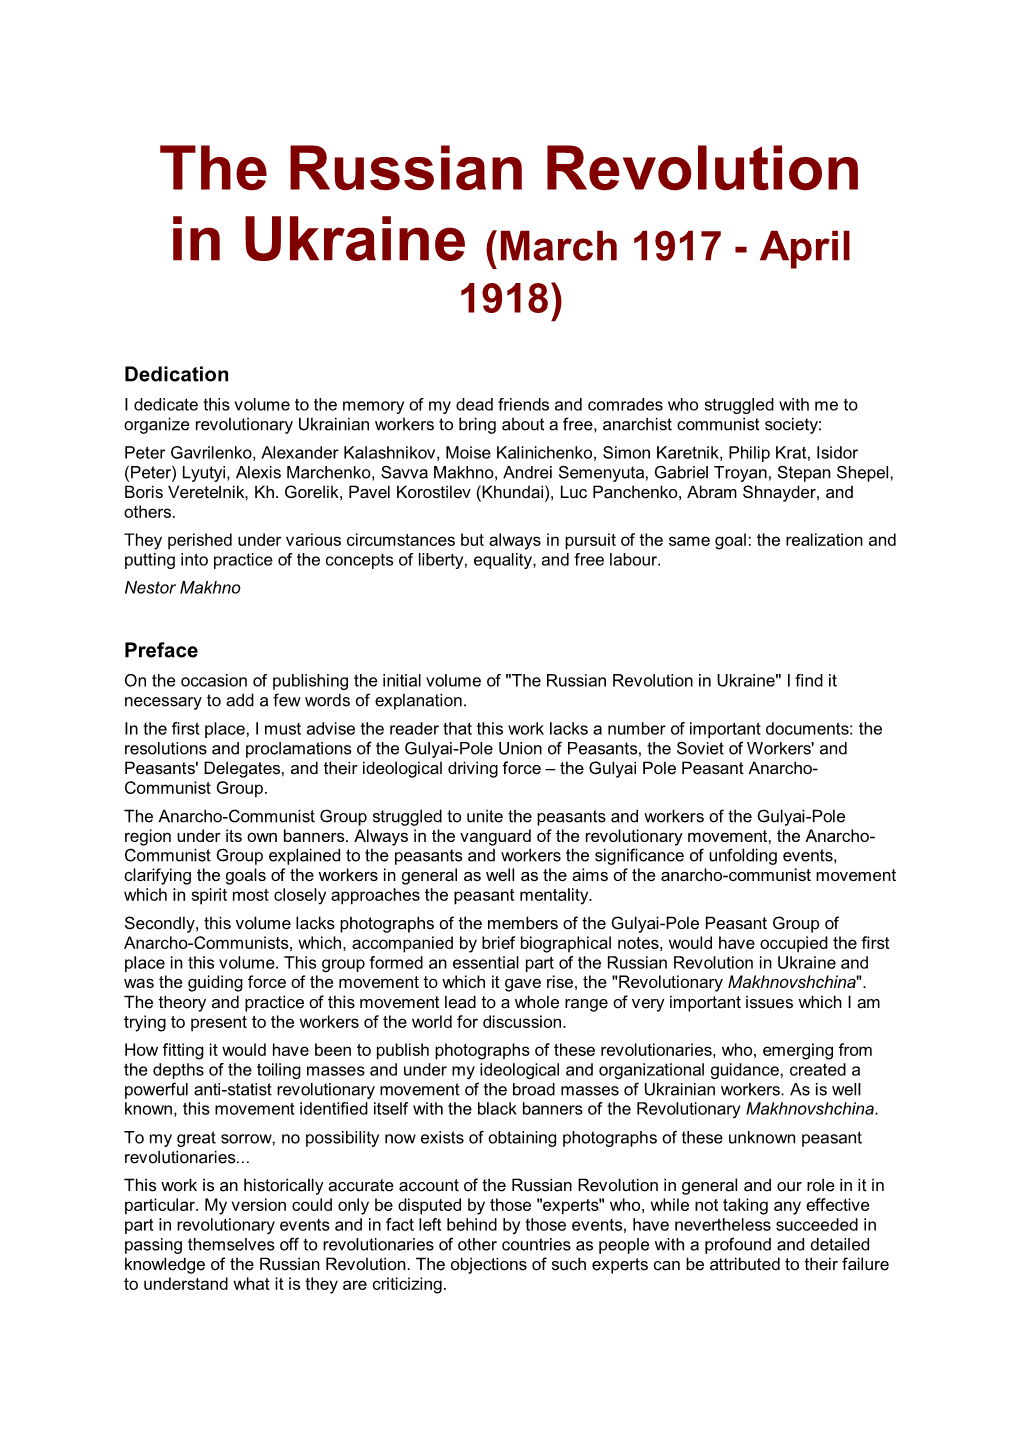 The Russian Revolution in Ukraine (March 1917 - April 1918)